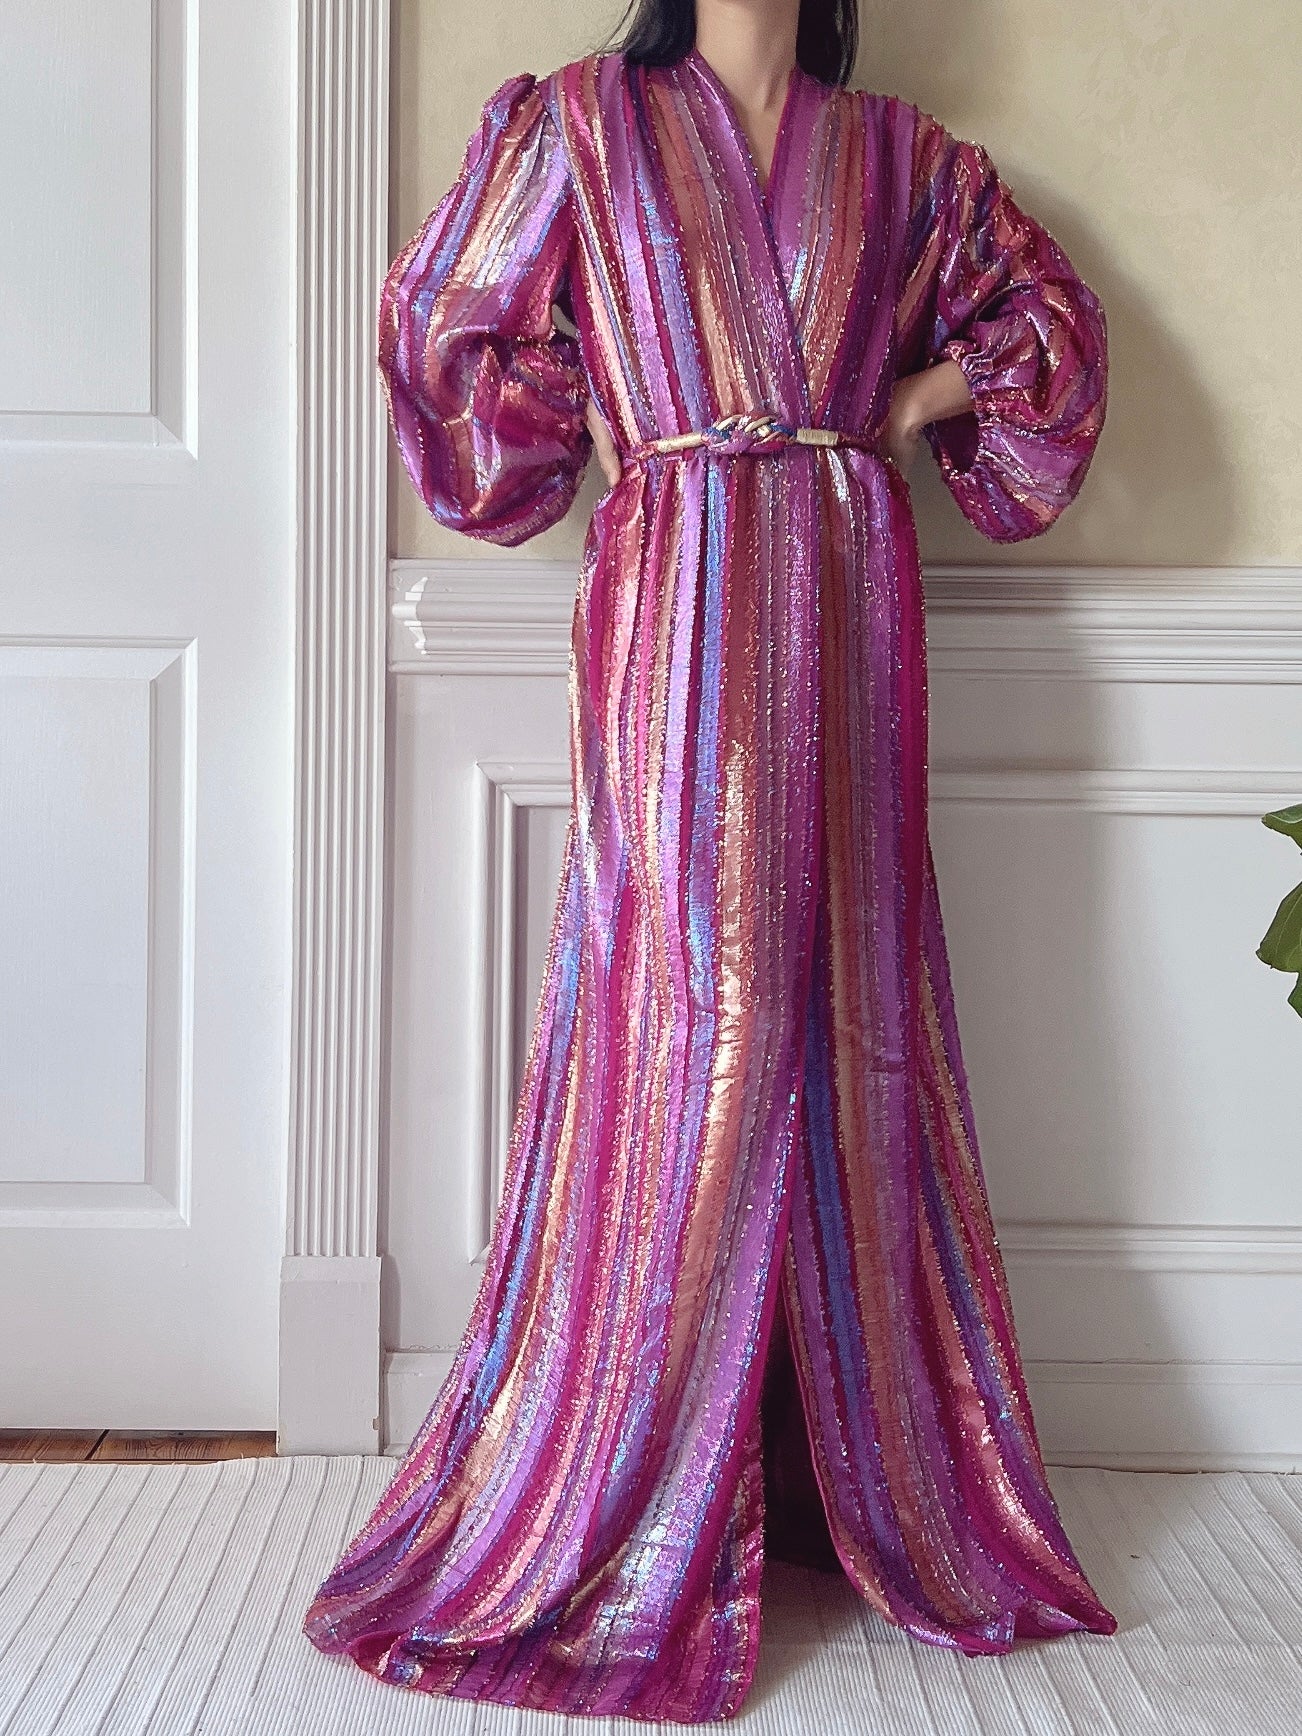 Vintage Victor Costa Lurex Gown - M/L